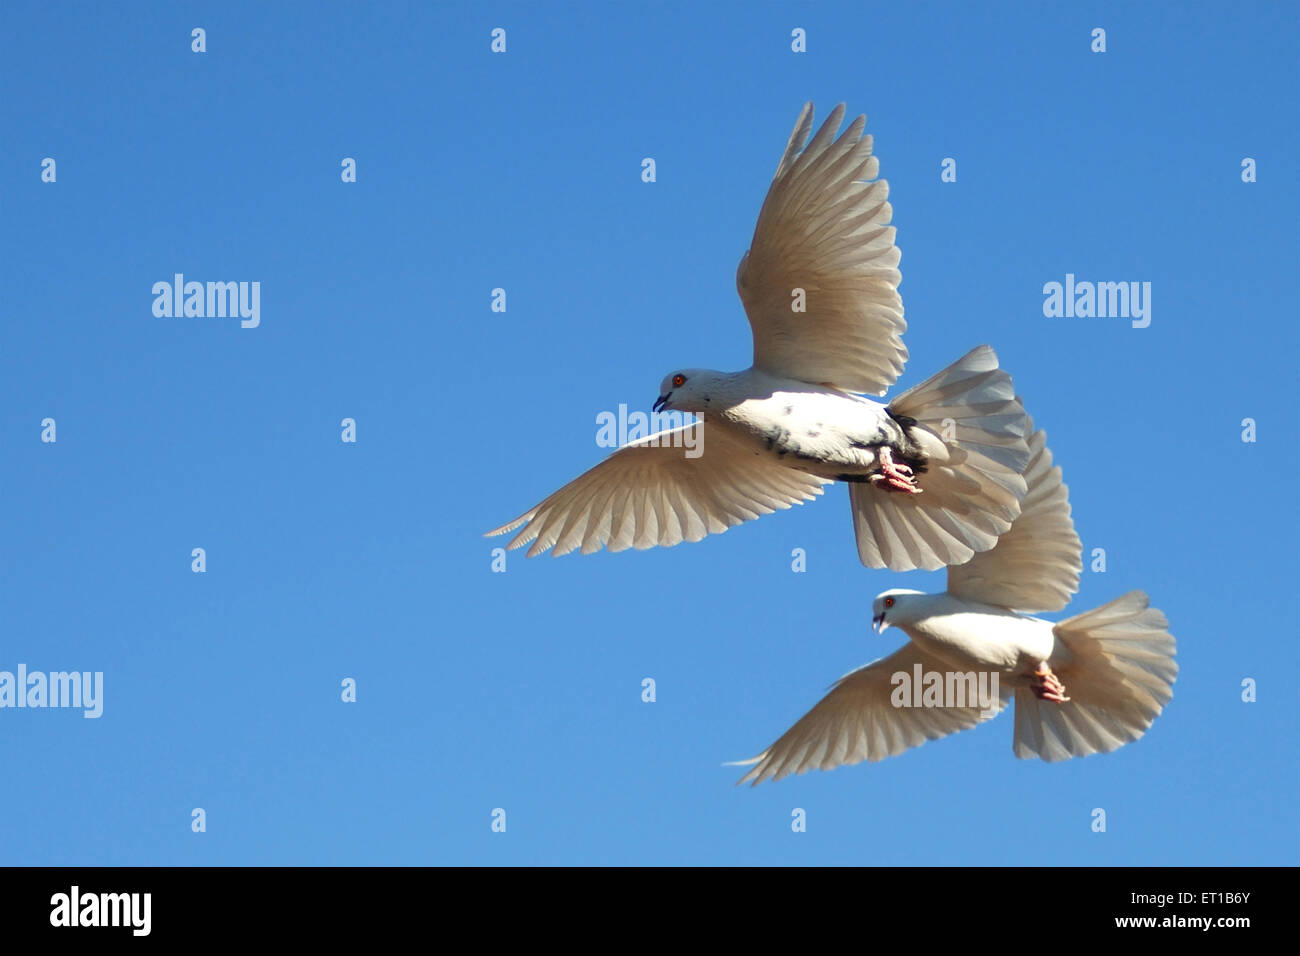 Dos palomas blancas volando, Ajmer, Rajasthan, India, Asia Foto de stock